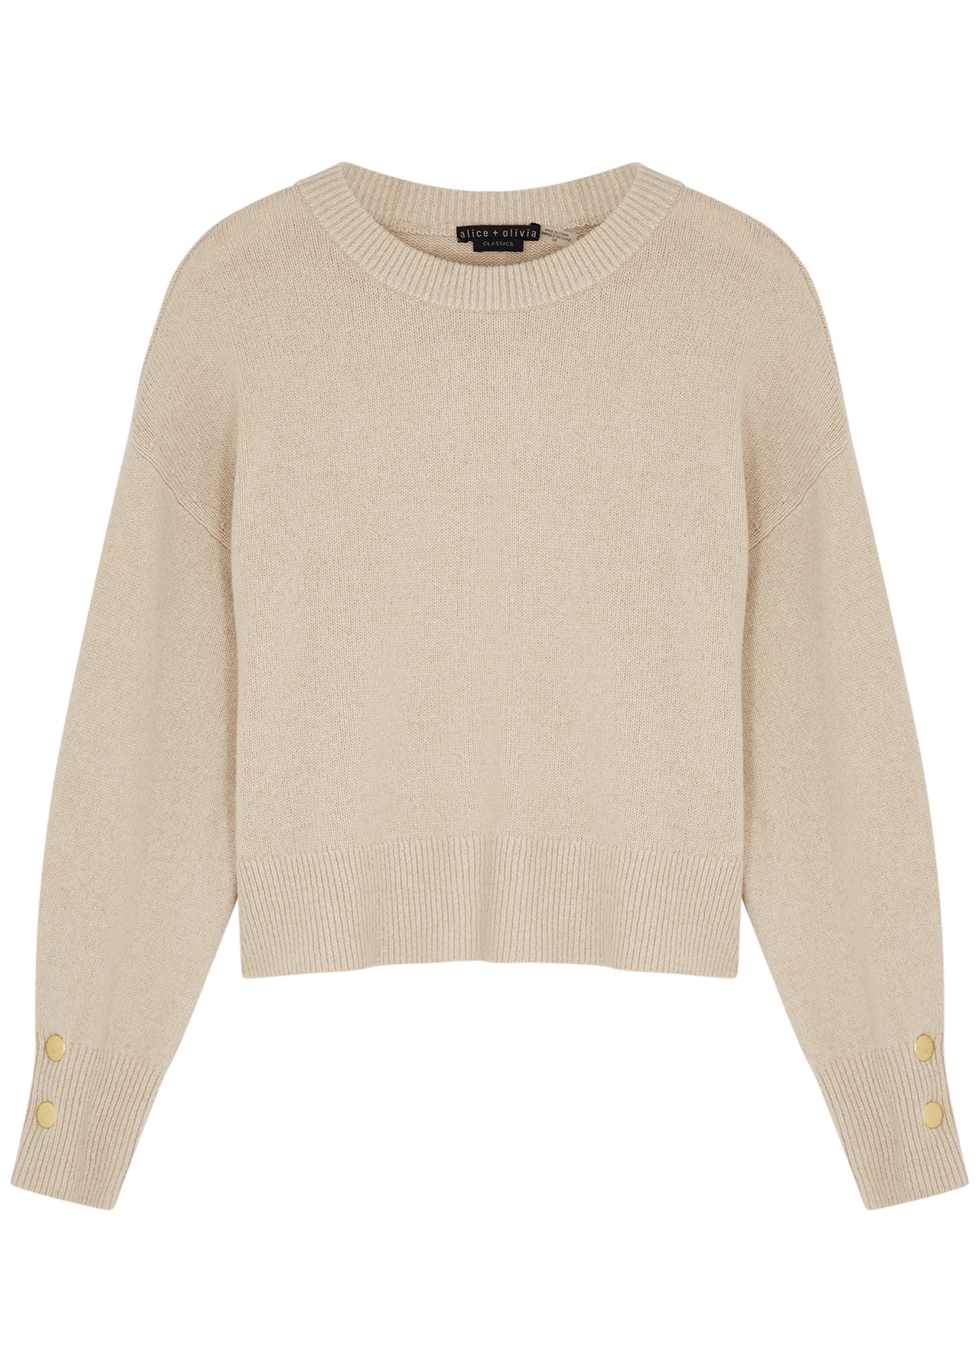 Bevan stone cashmere-blend jumper